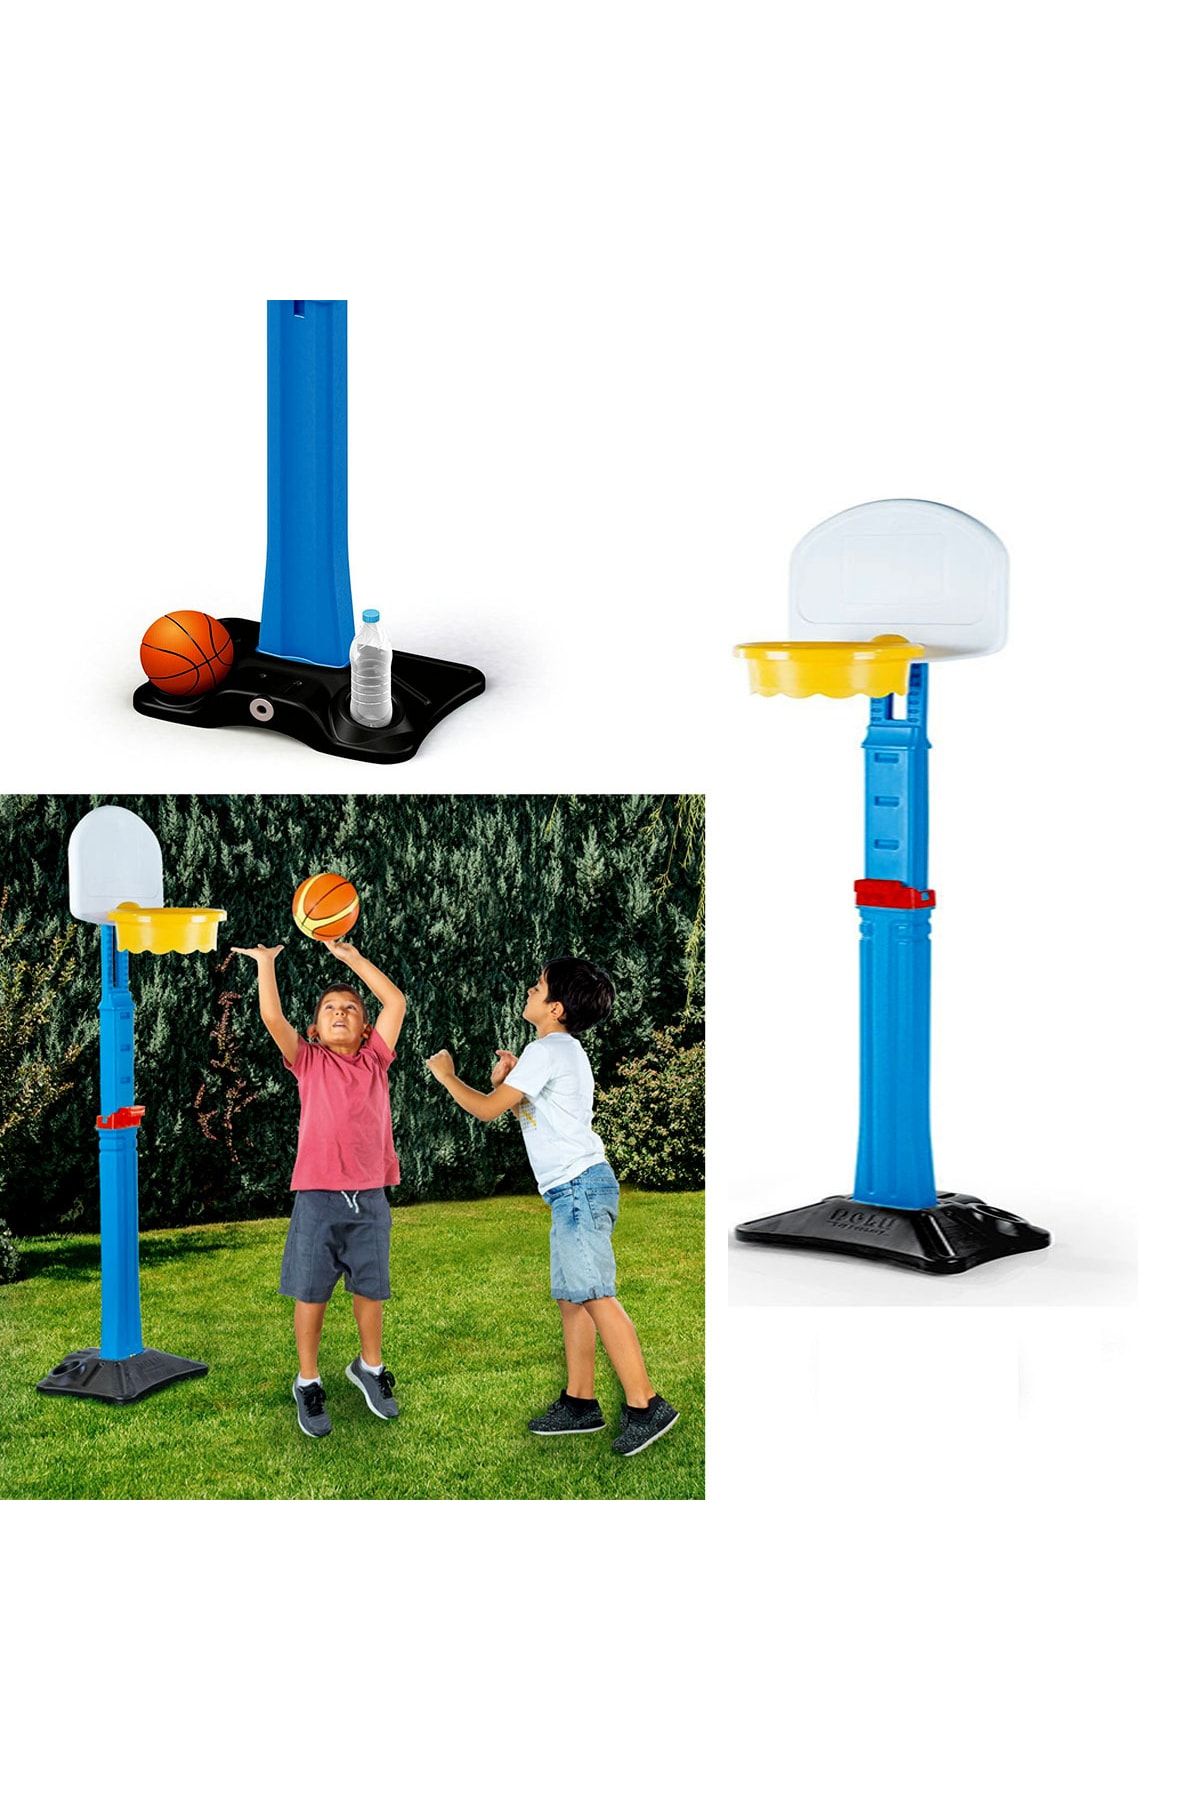 SAZE 3030 Basketbol Potası Boyu 170 Cm'e Kadar Uzayabilir( Top Dahil Deyildir)